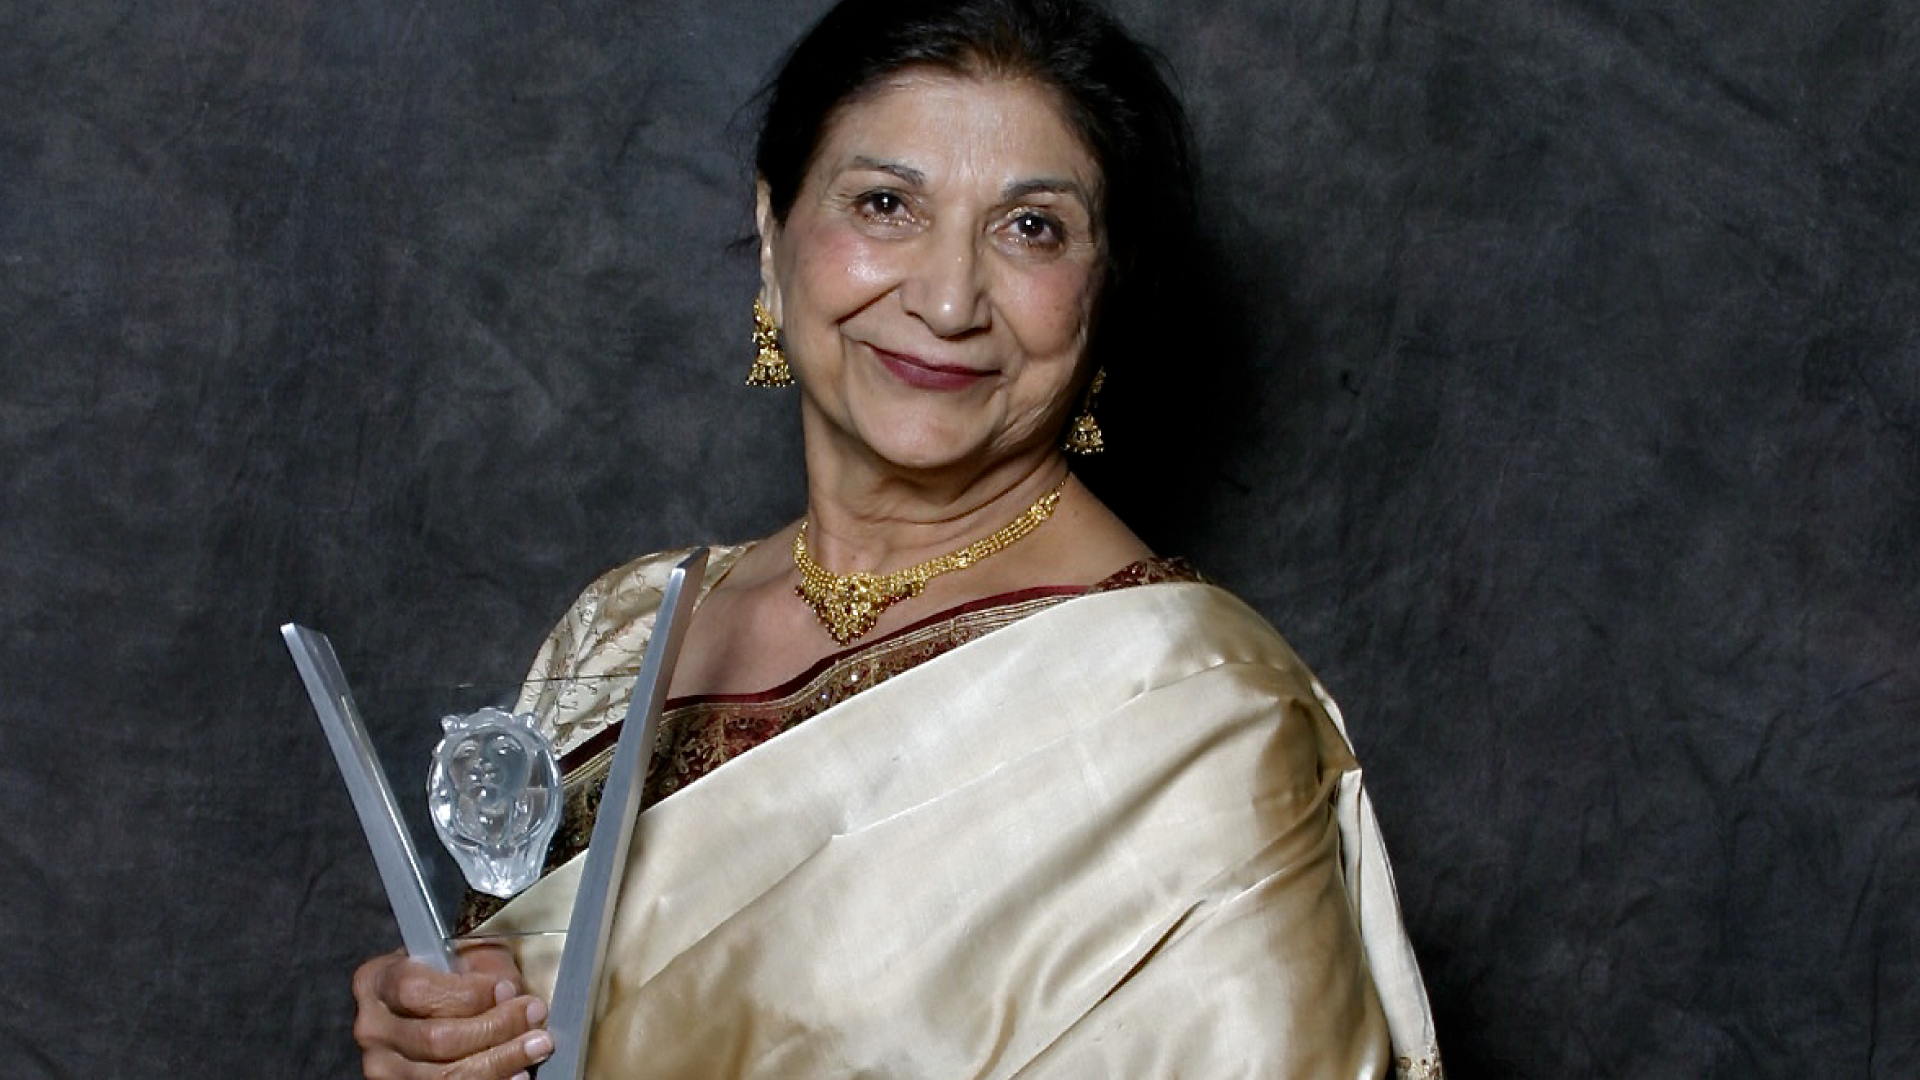 Actor Balinder Johal in a sari posing with an award